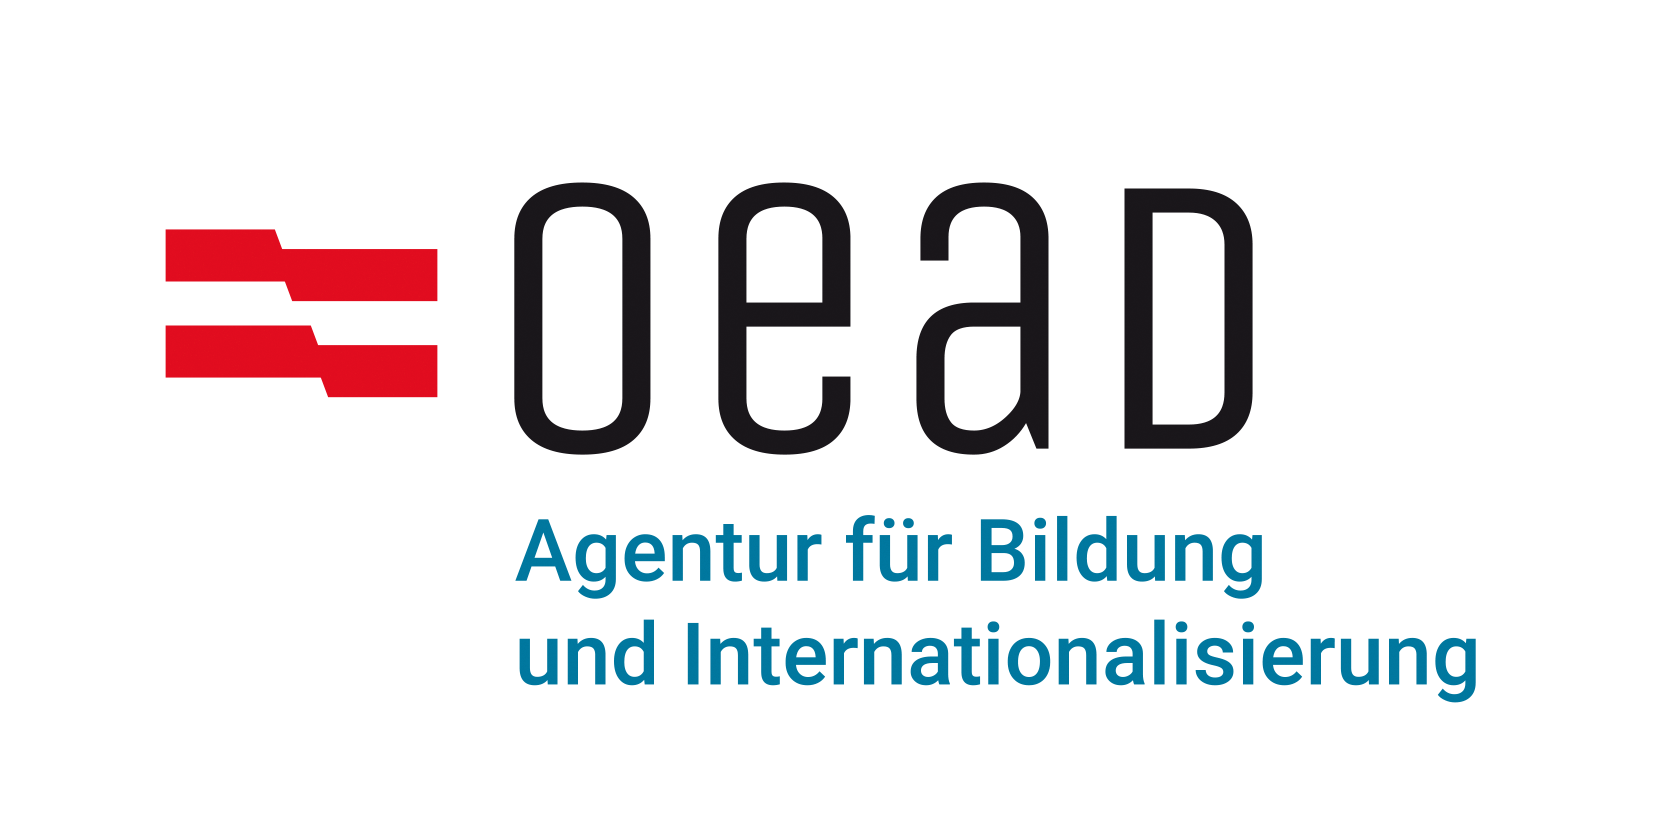 Agentur für Bildung und Internationalisierung (OeAD)